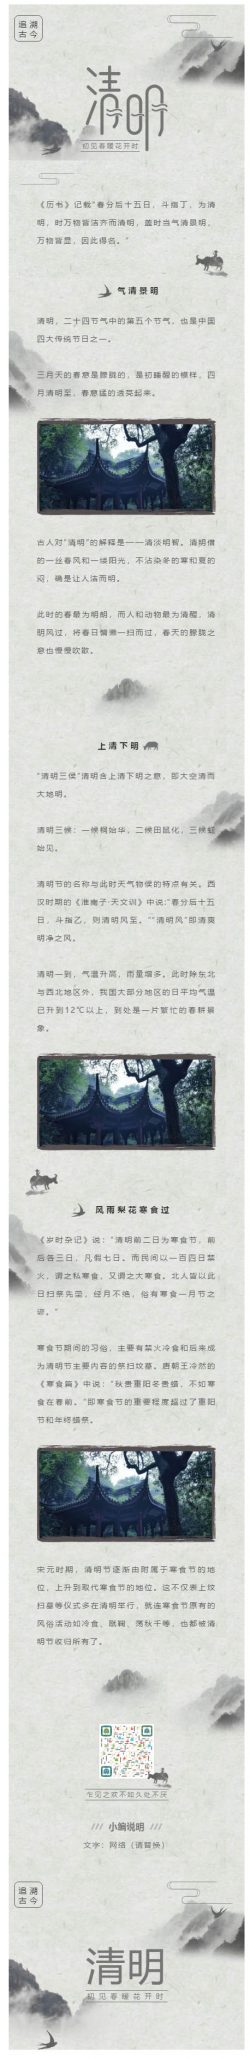 清明节二十四节气中国传统节日中国风水墨风格微信推送图文推文背景图